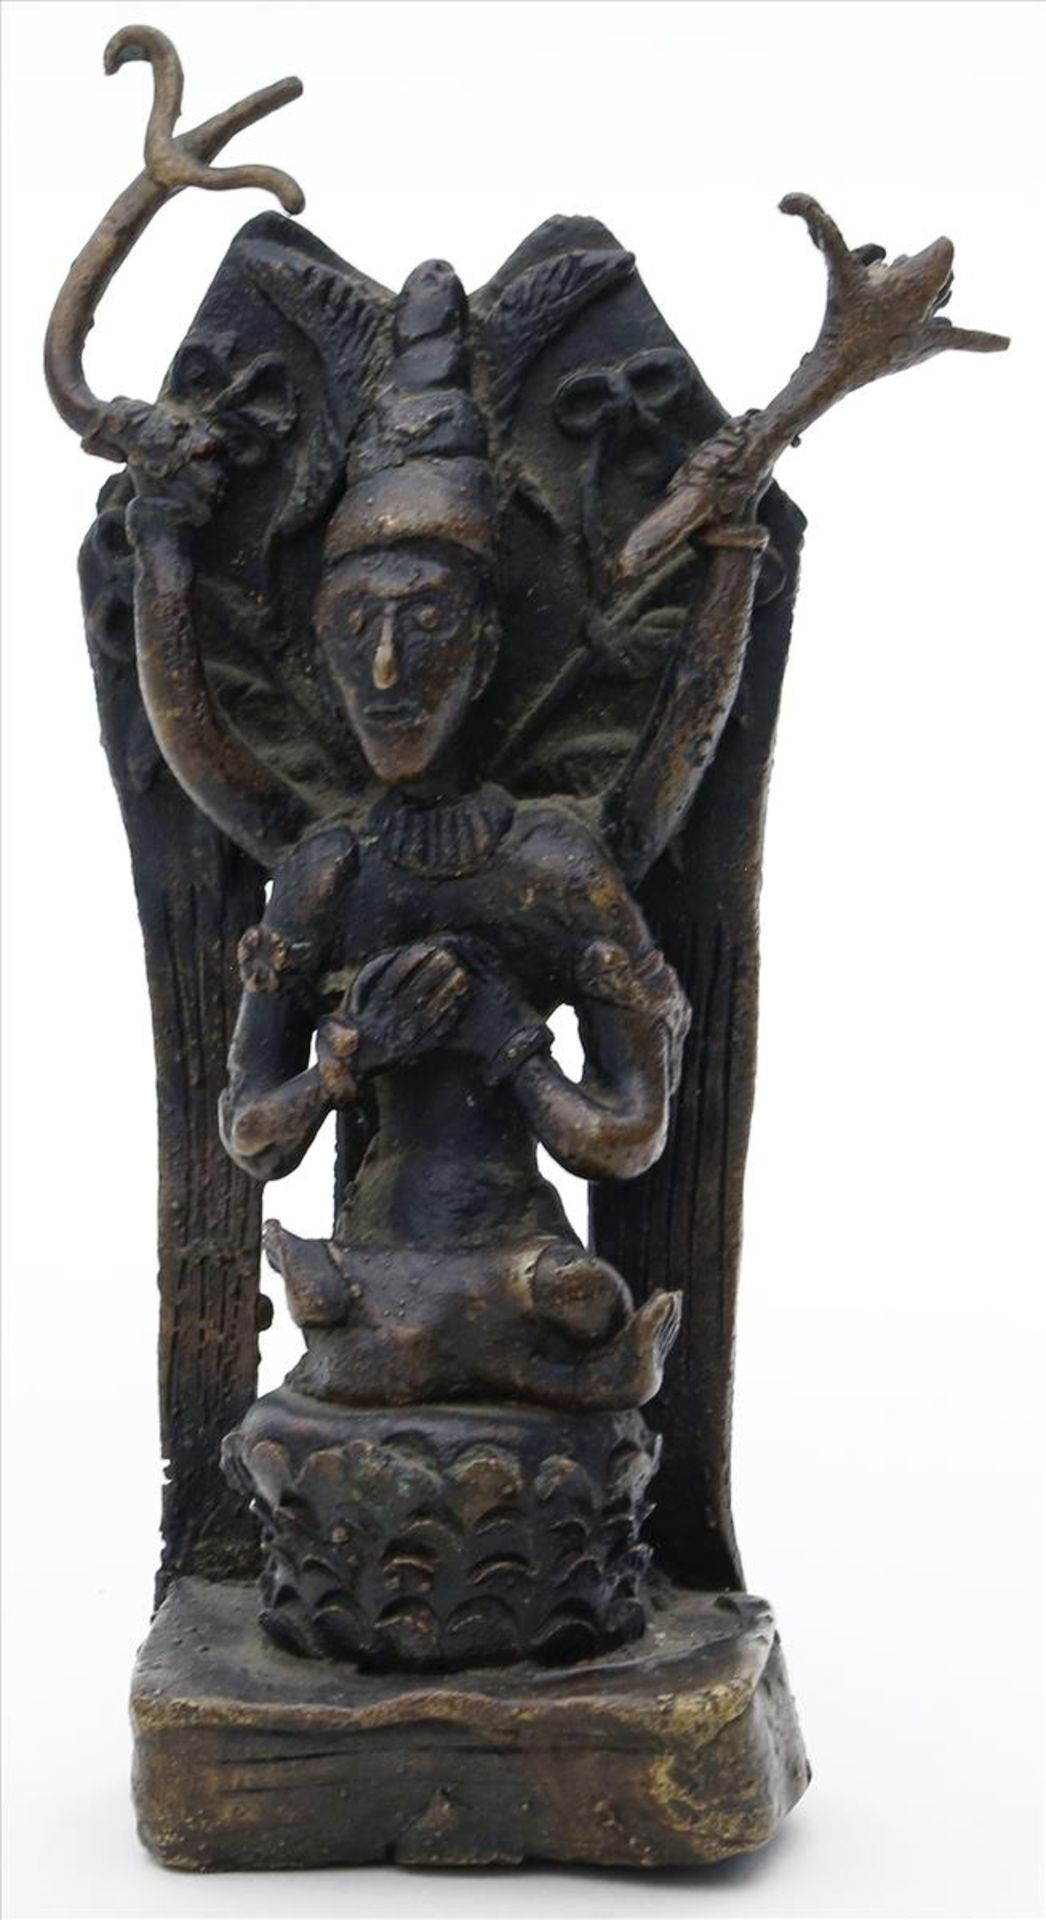 Skulptur eines sitzenden Häuptlings.Schwarz-braun patinierte Bronze. Wohl Afrika. H. 15 cm.